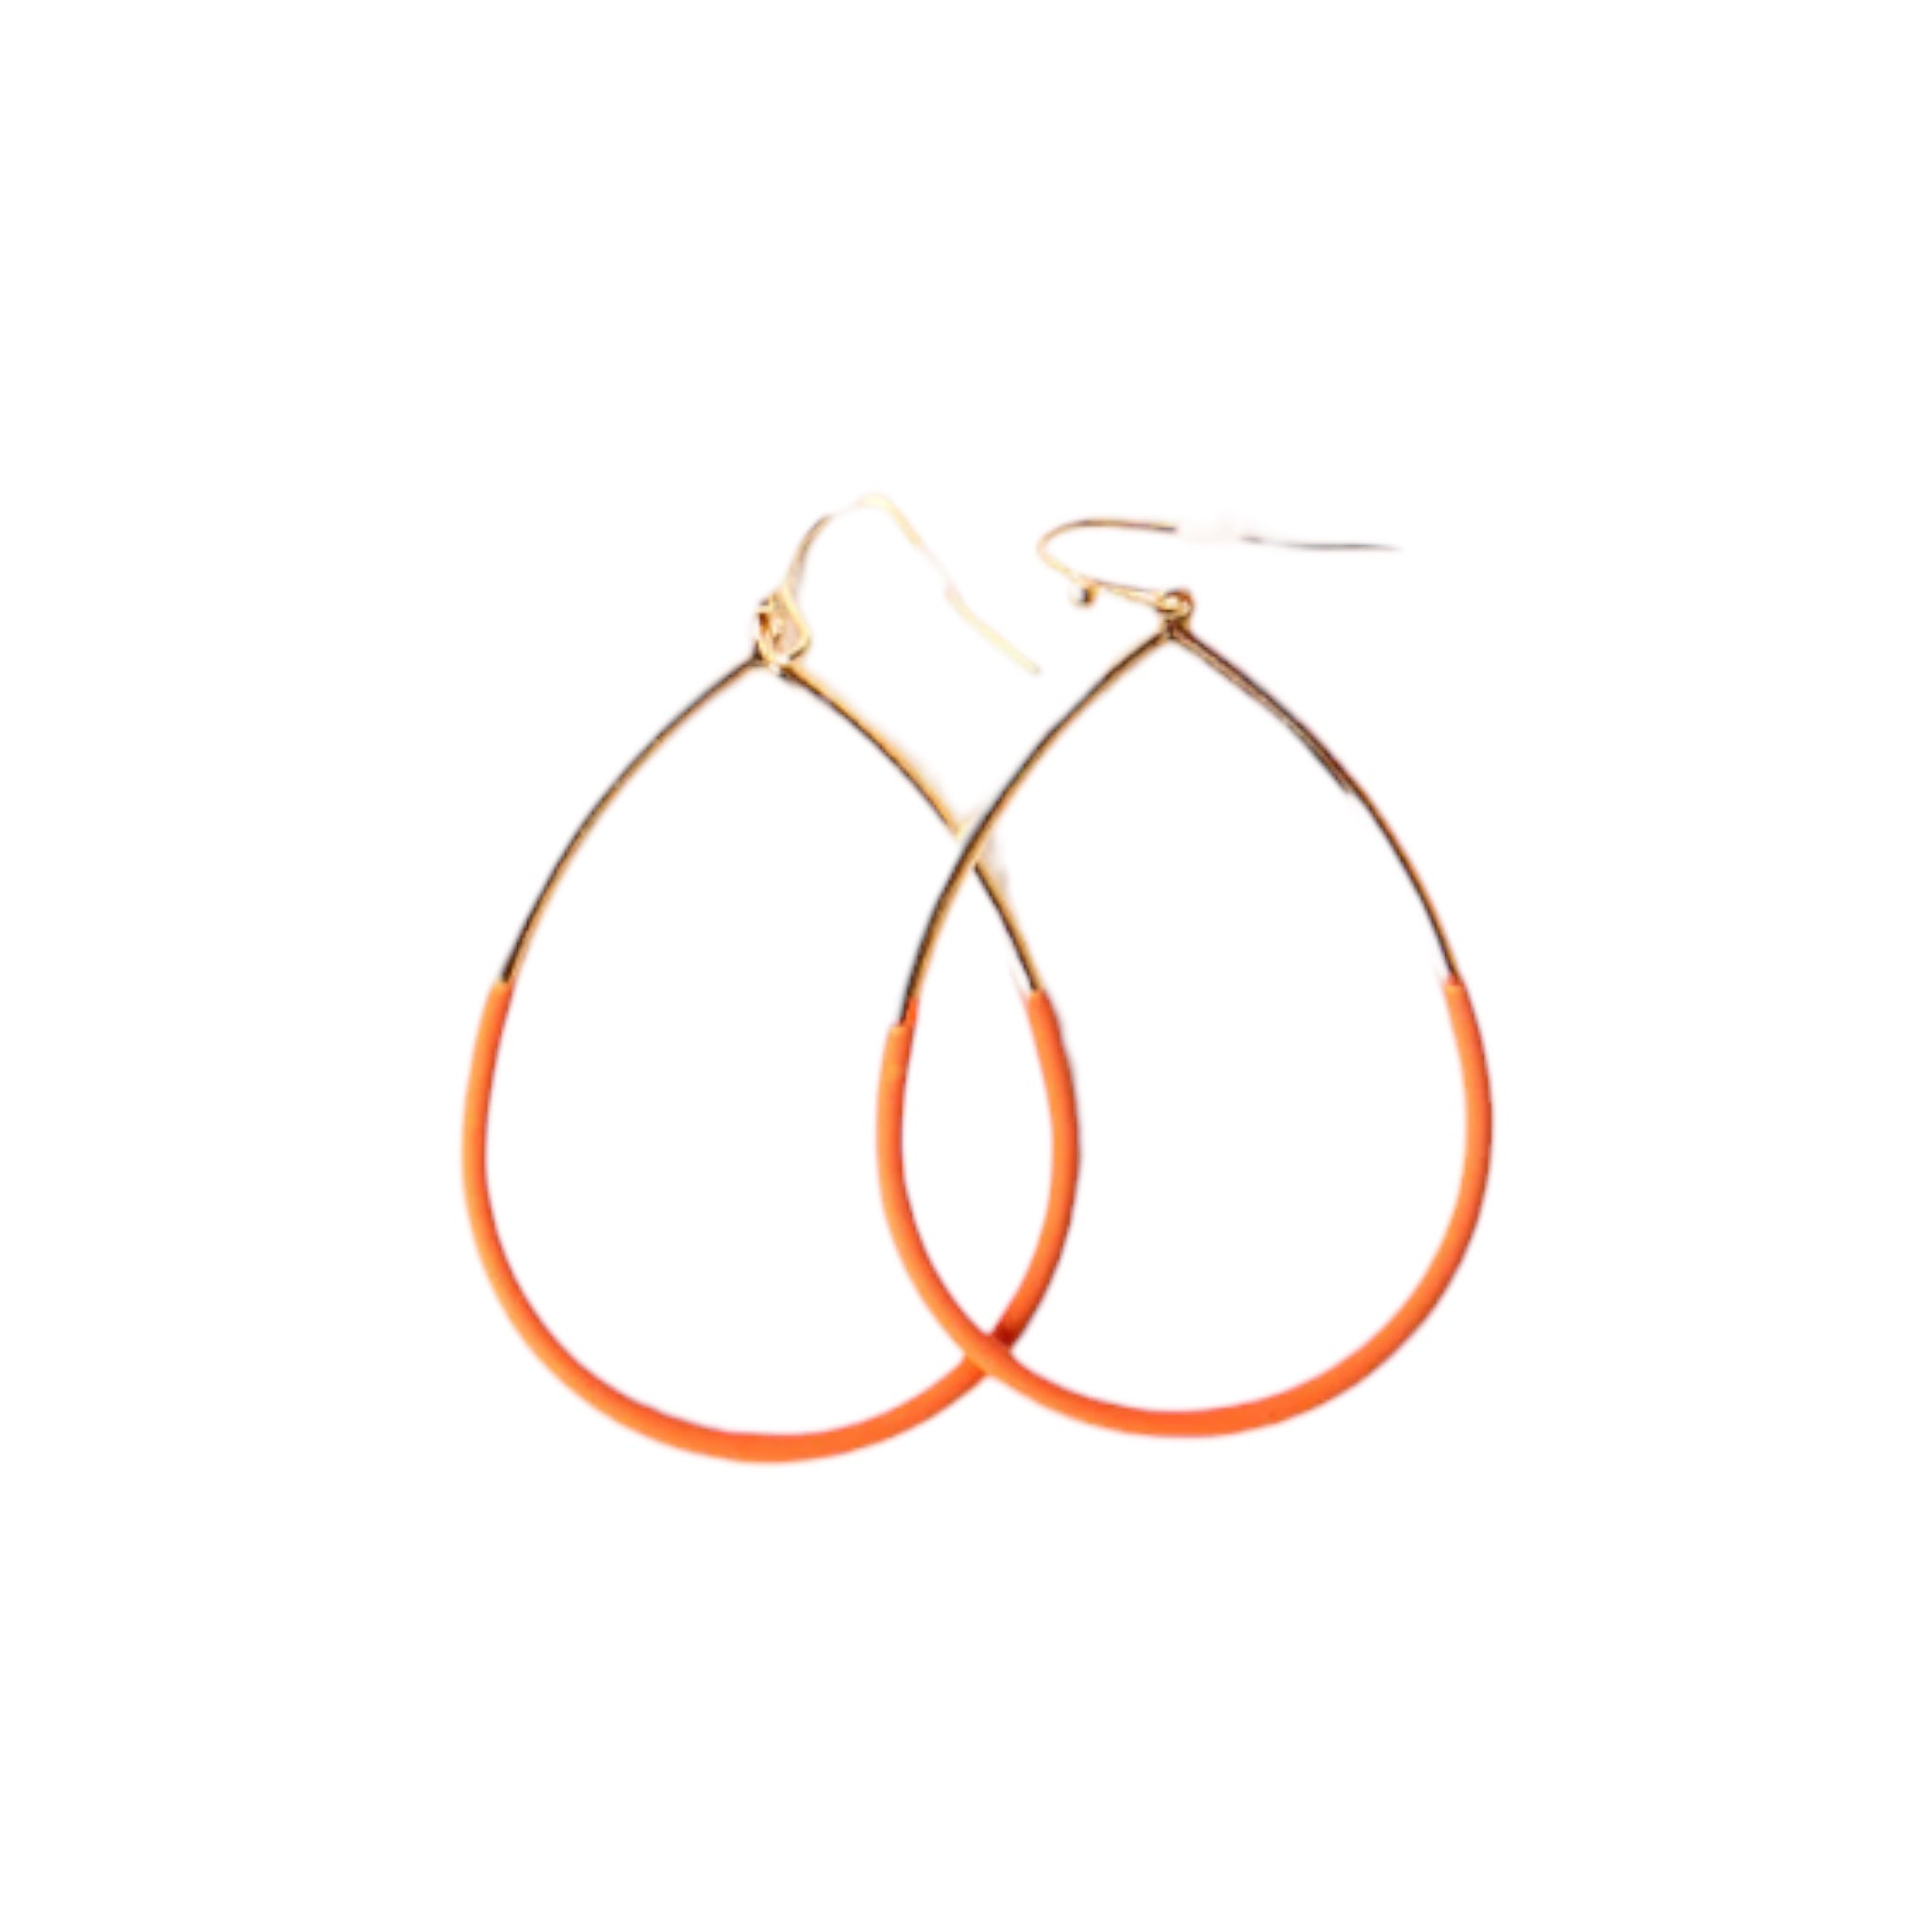 Tilly & Grace Leah Earrings Orange